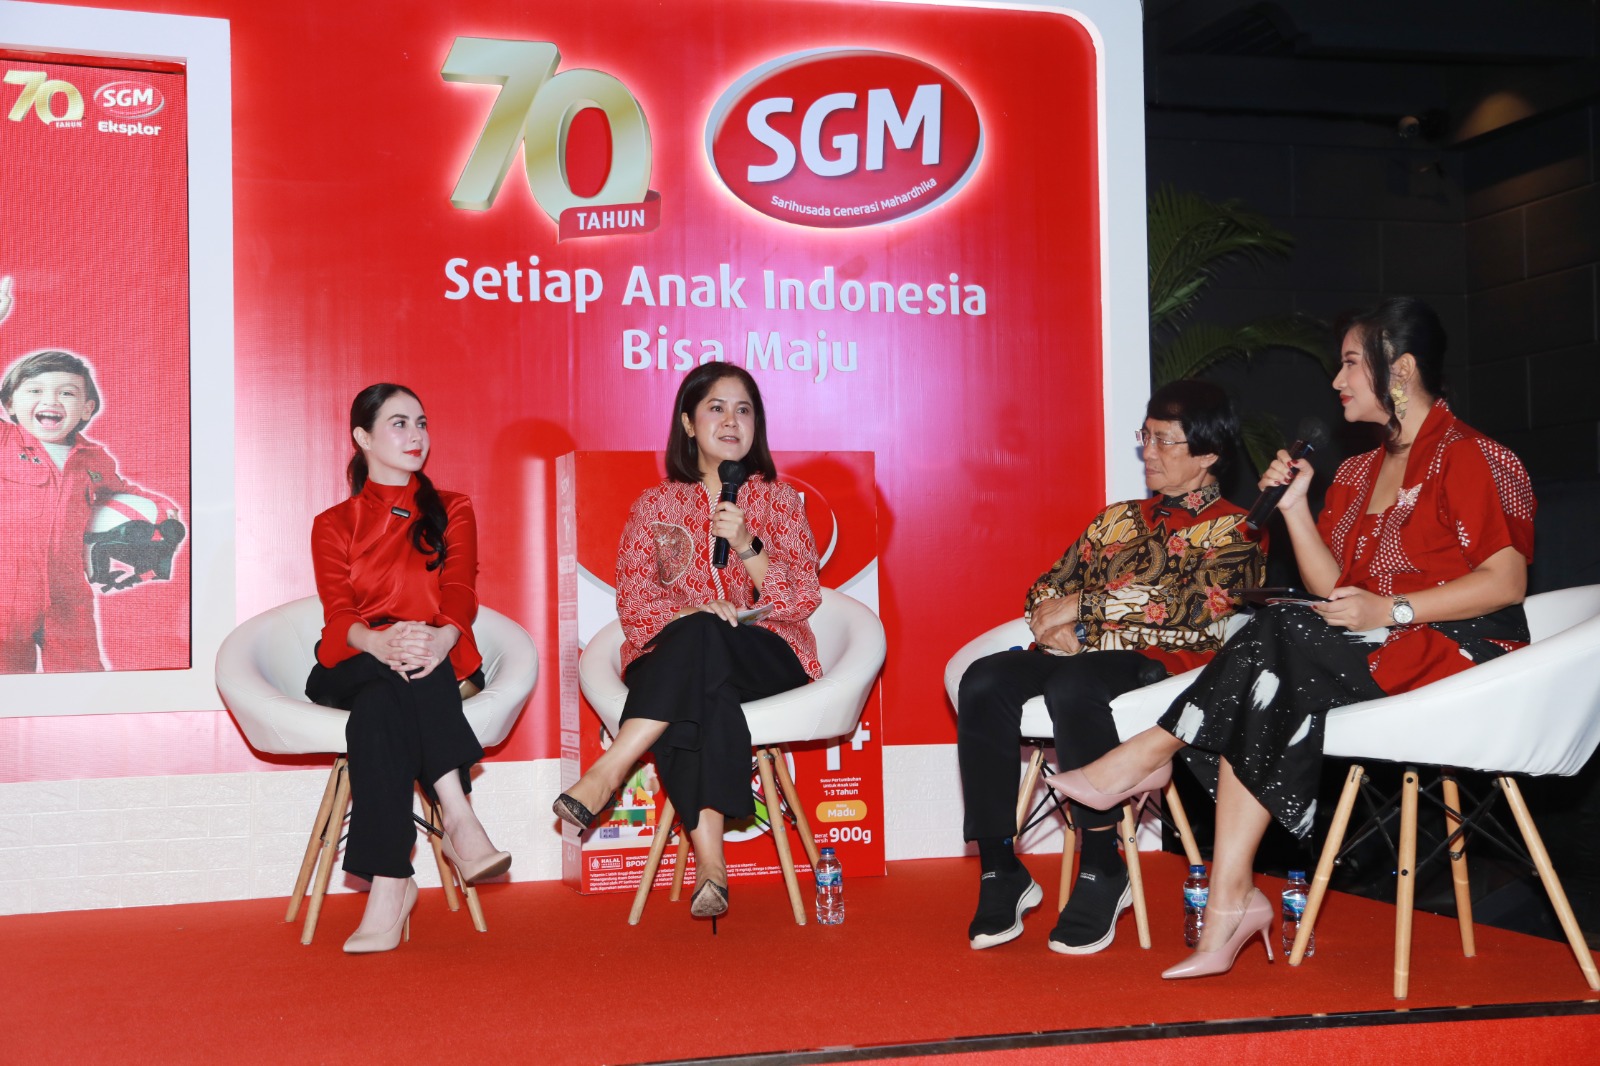 SGM meluncurkan Program Bantuan Dana Pendidikan tingkat Sekolah Dasar (SD) bagi 70 anak Generasi Maju Indonesia dari berbagai daerah di Indonesia/Dok. SGM